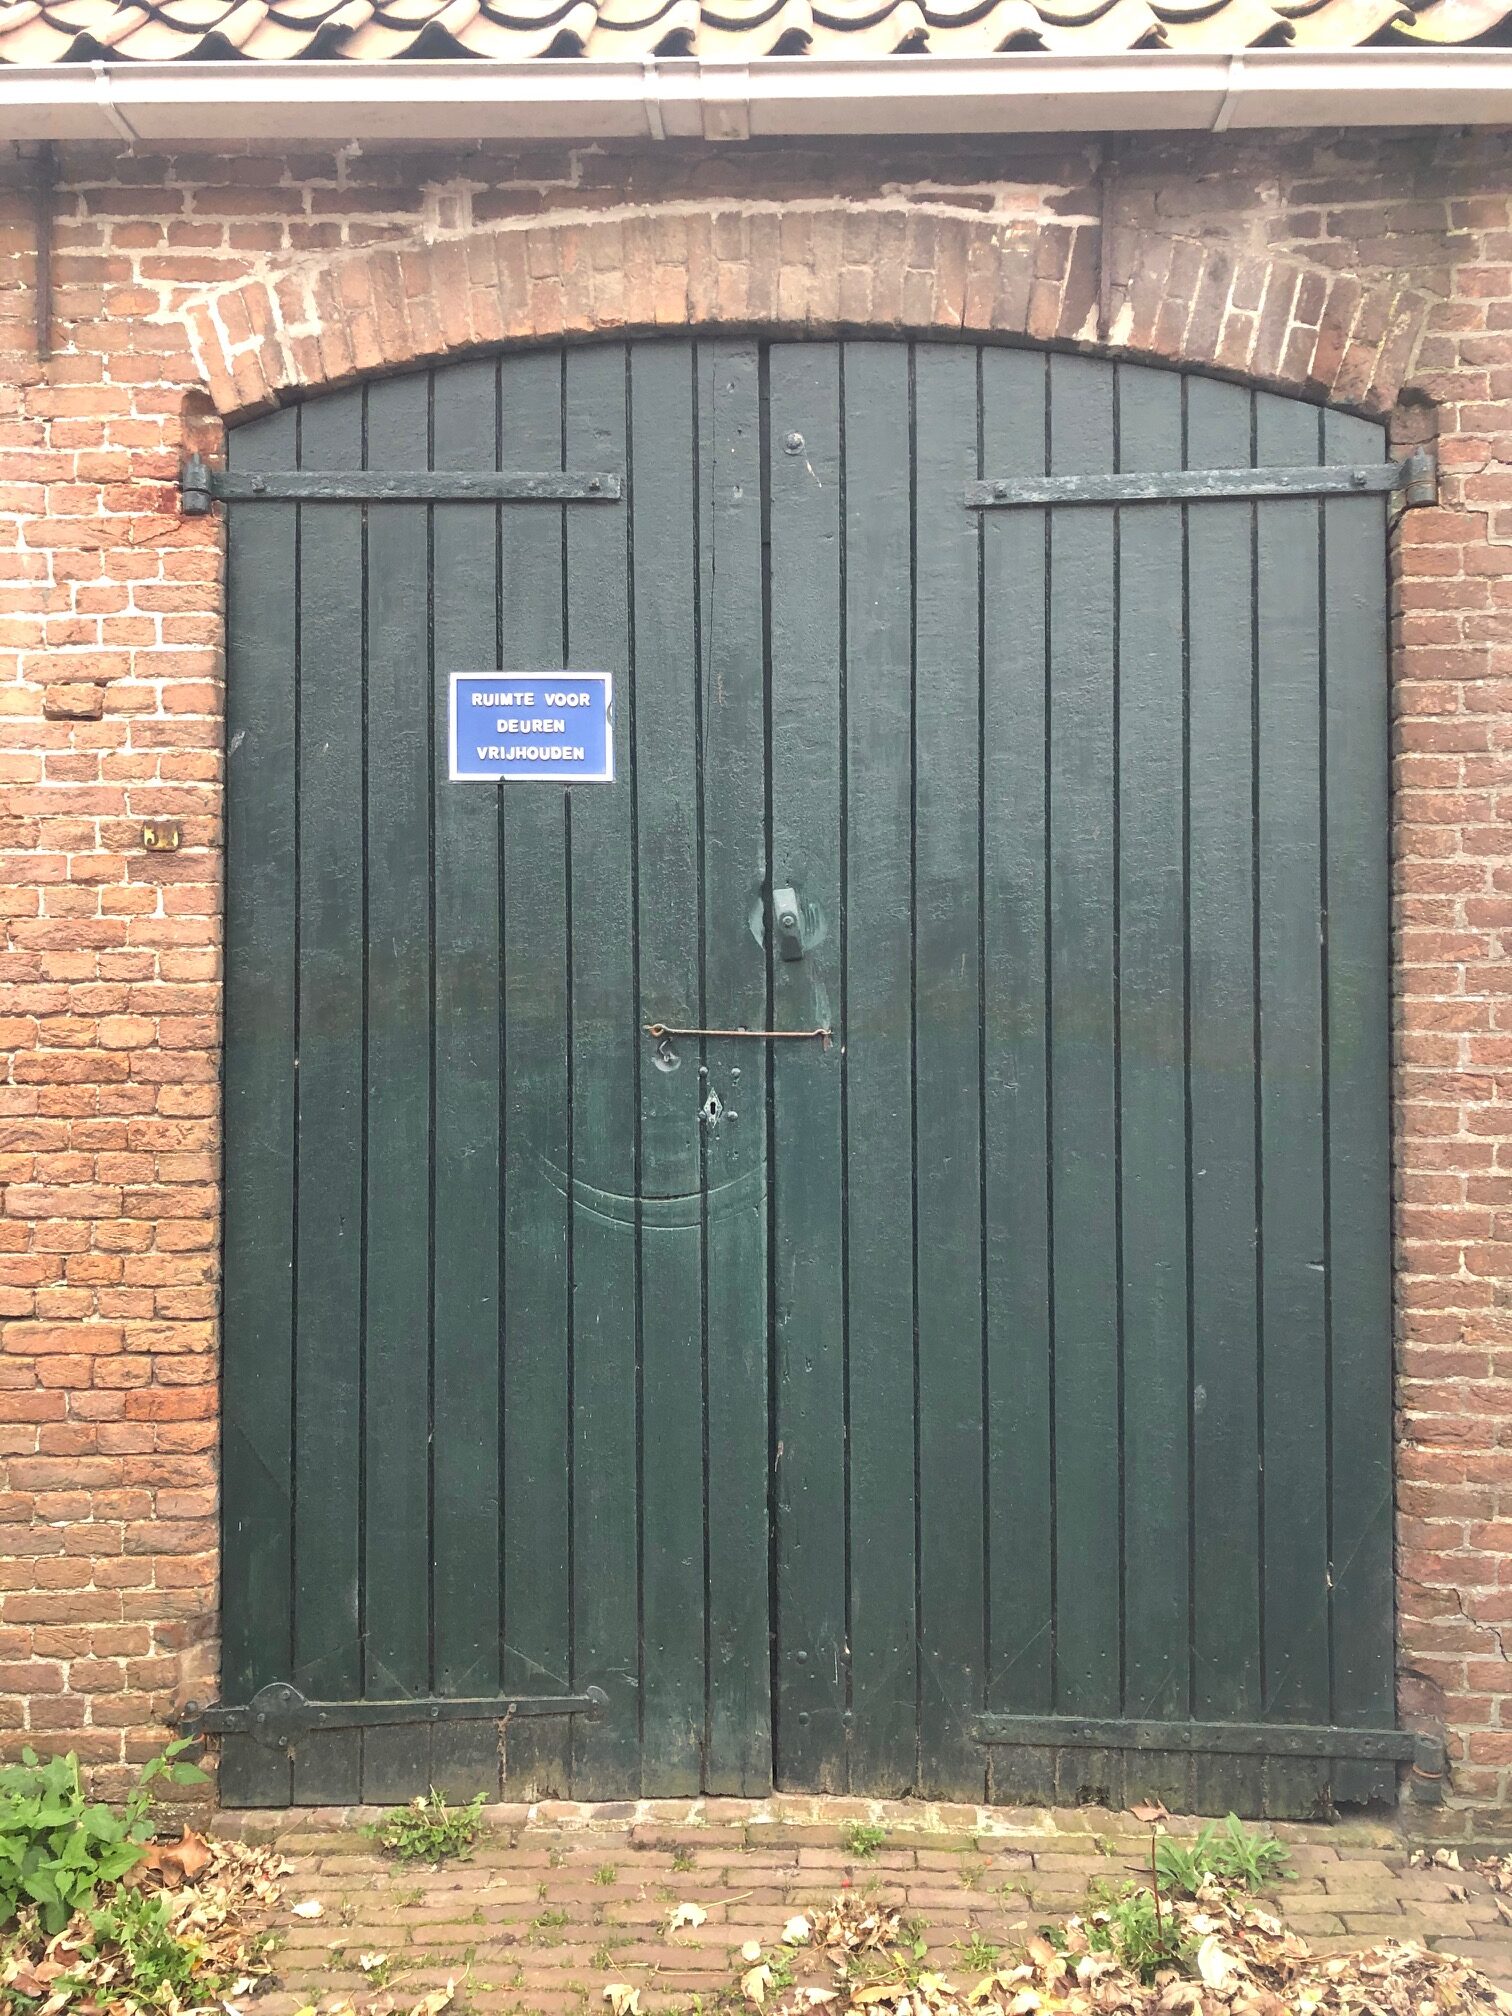 twee groene deuren met daarop een bordje ruimte voor deuren vrijhouden